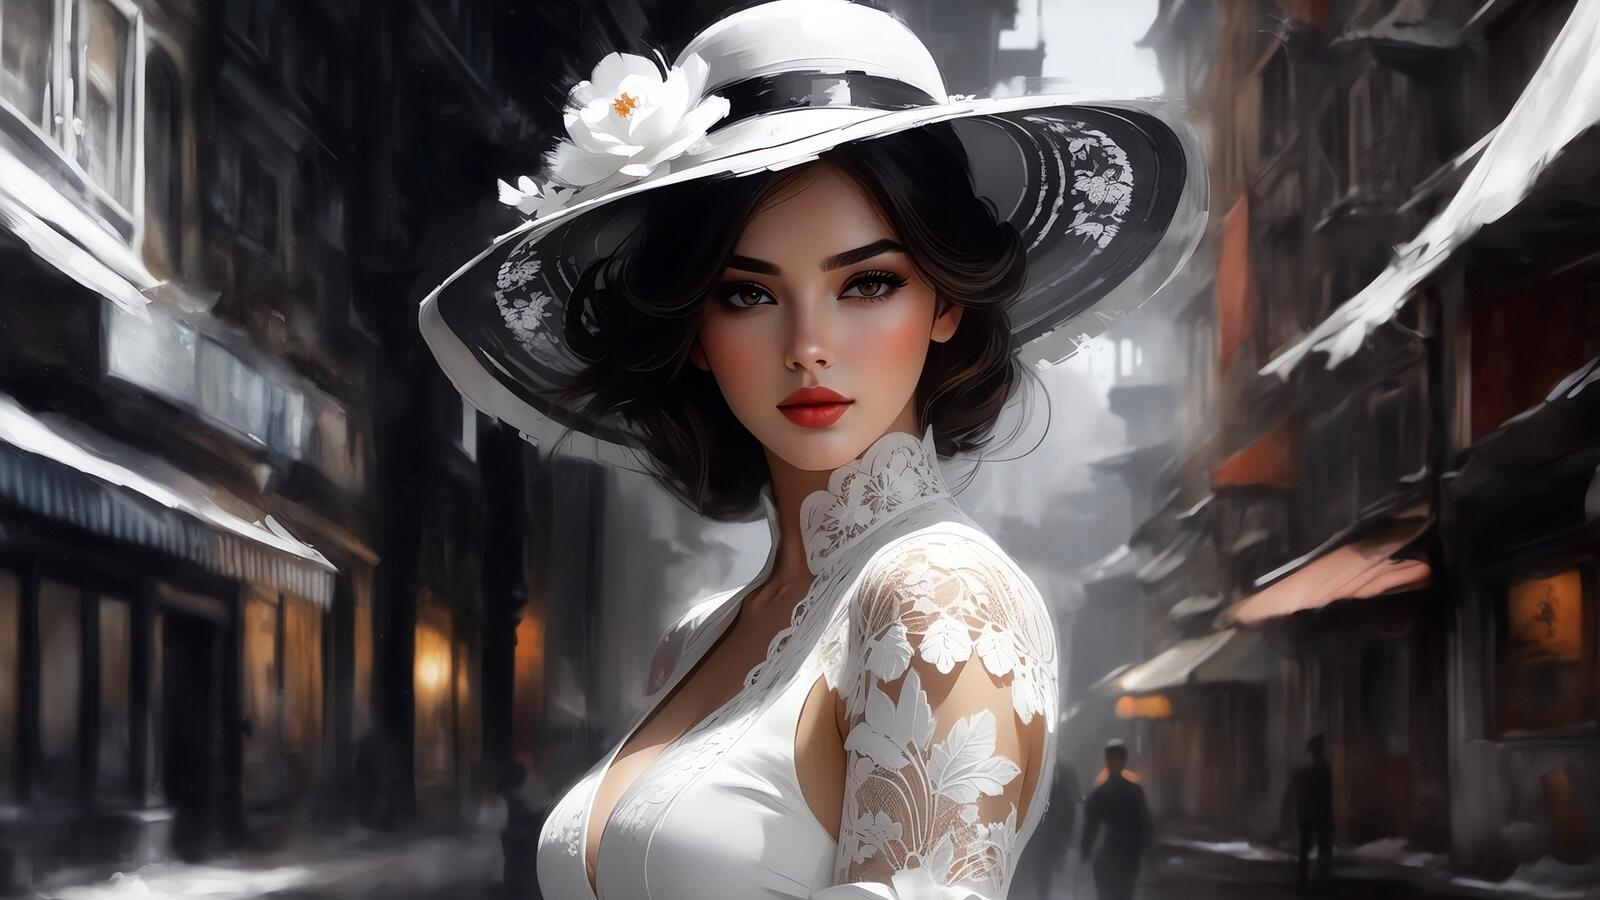 Бесплатное фото Портрет девушки в белой шляпе и платье на улице старого города